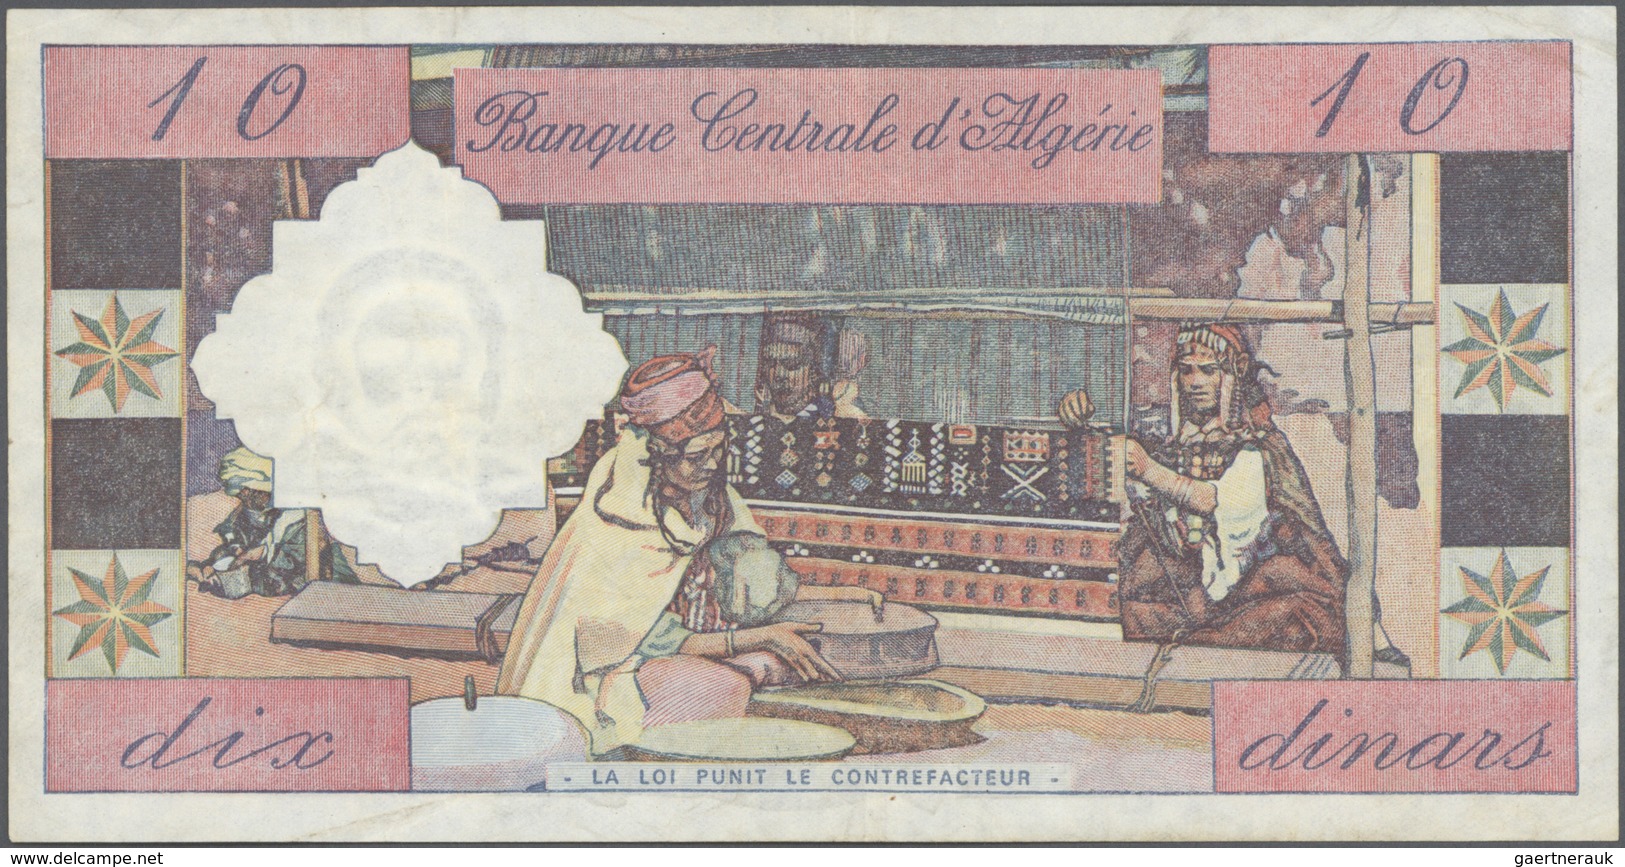 Algeria / Algerien: Set Of 2 Notes Banque Centrale D'Algerie Containing 10 & 100 Dinars 1964 P. 123, - Algérie